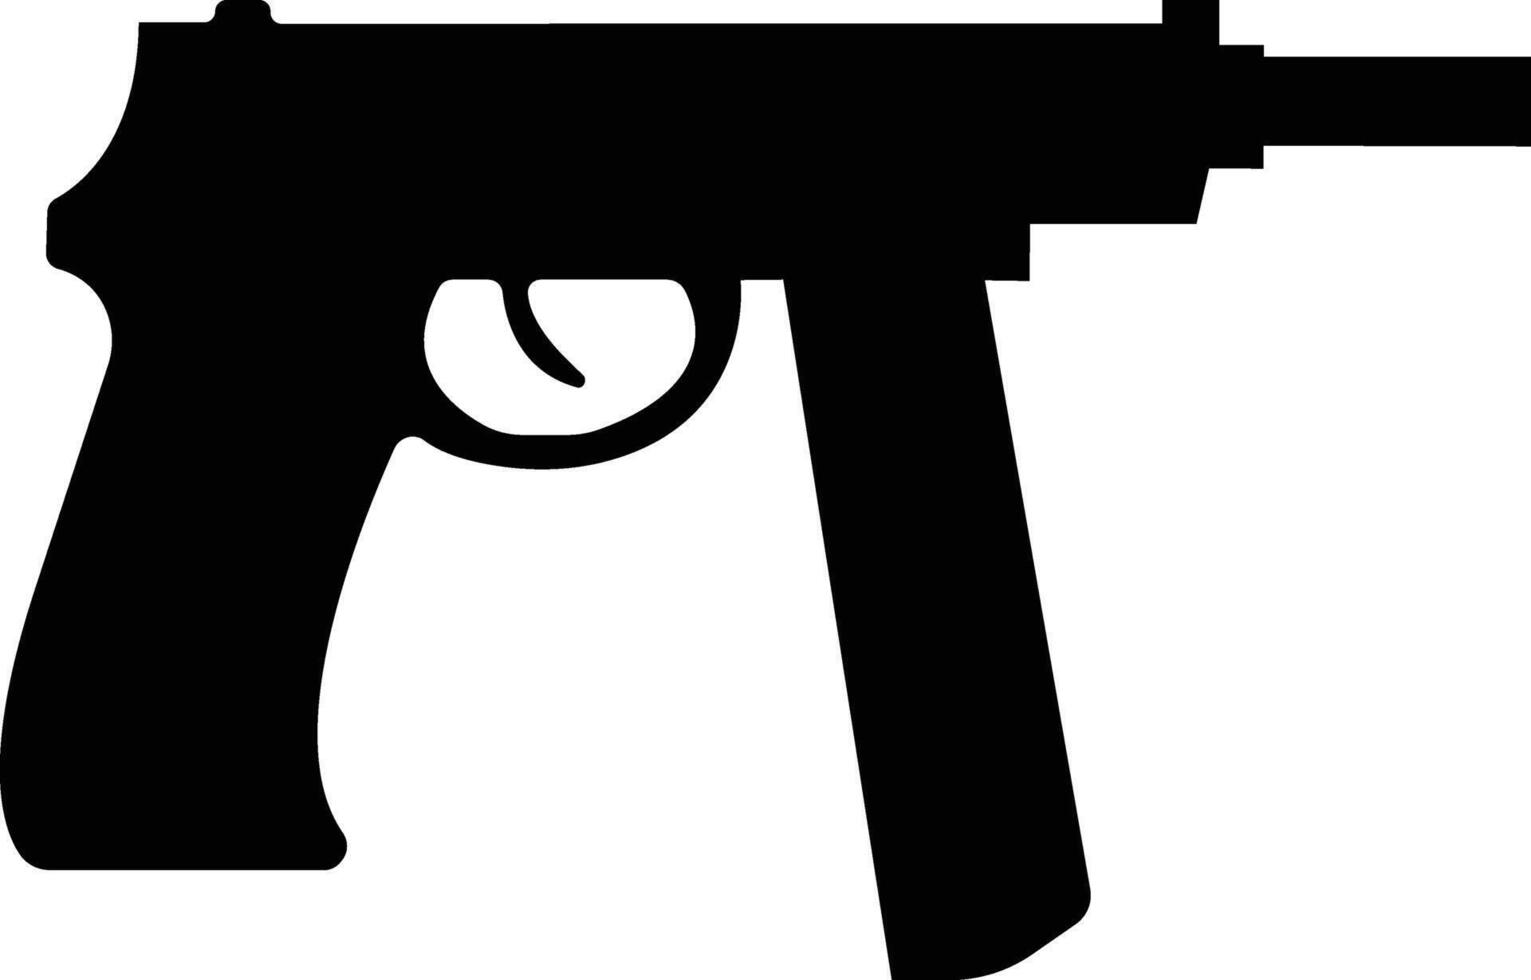 Pistole Symbol im eben von Heer und Krieg isoliert auf Symbol Vektor zum Apps und Webseite. Pistole, Gewehr, Revolver zum wild Westen Konzept, Polizei Offizier Munition oder Militär- Waffe.